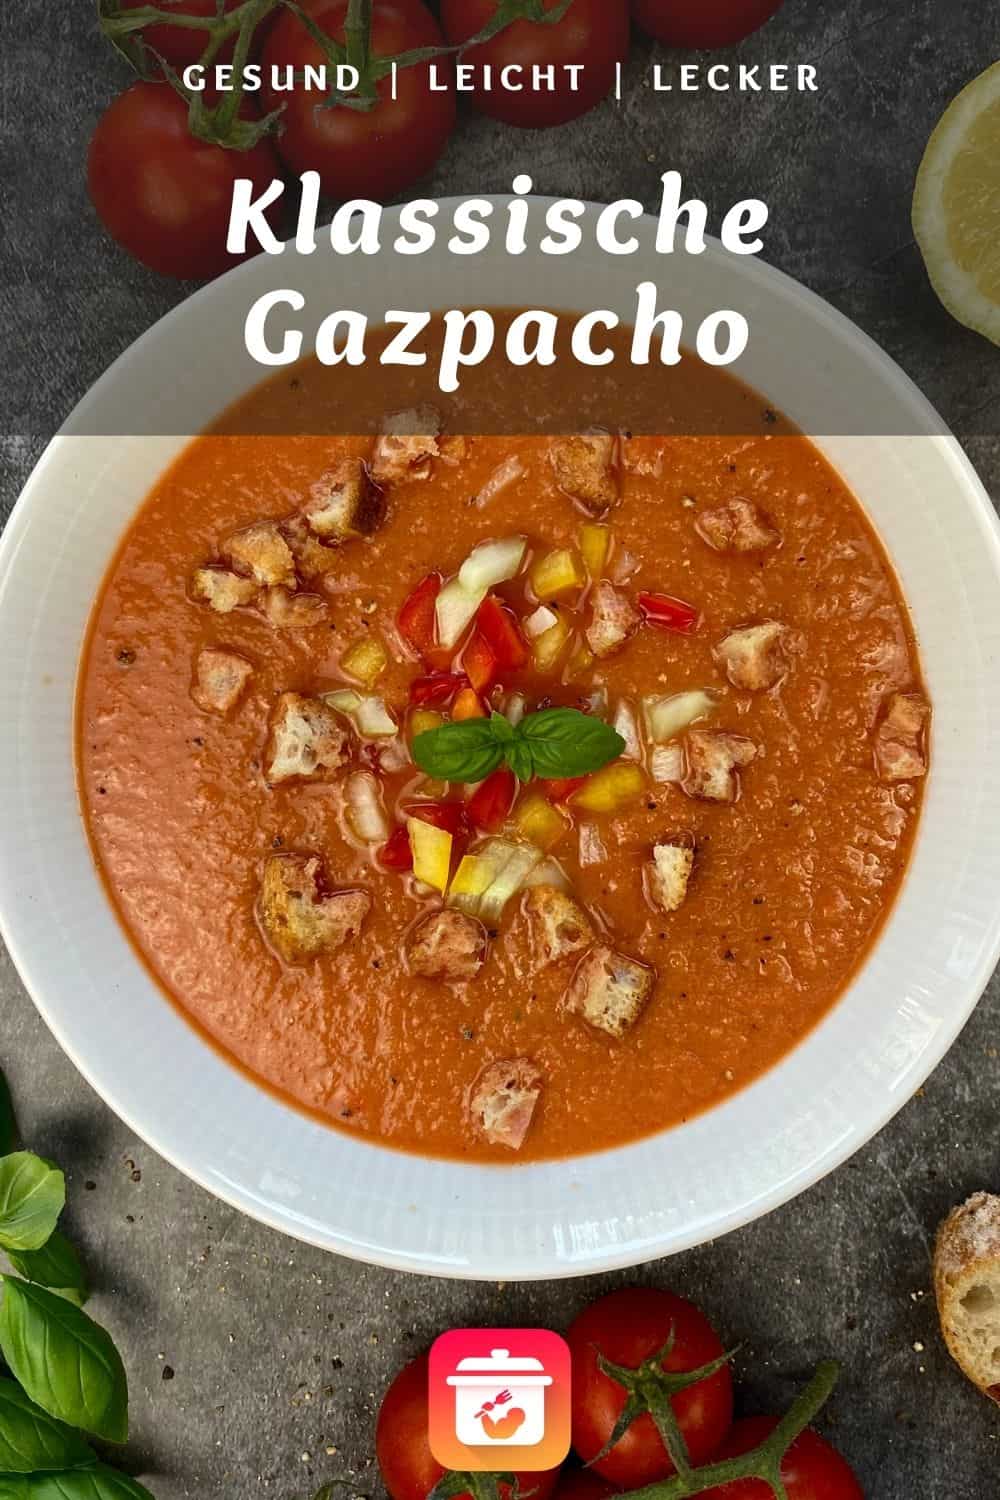 Gazpacho Andaluz - Kalte spanische Tomatensuppe